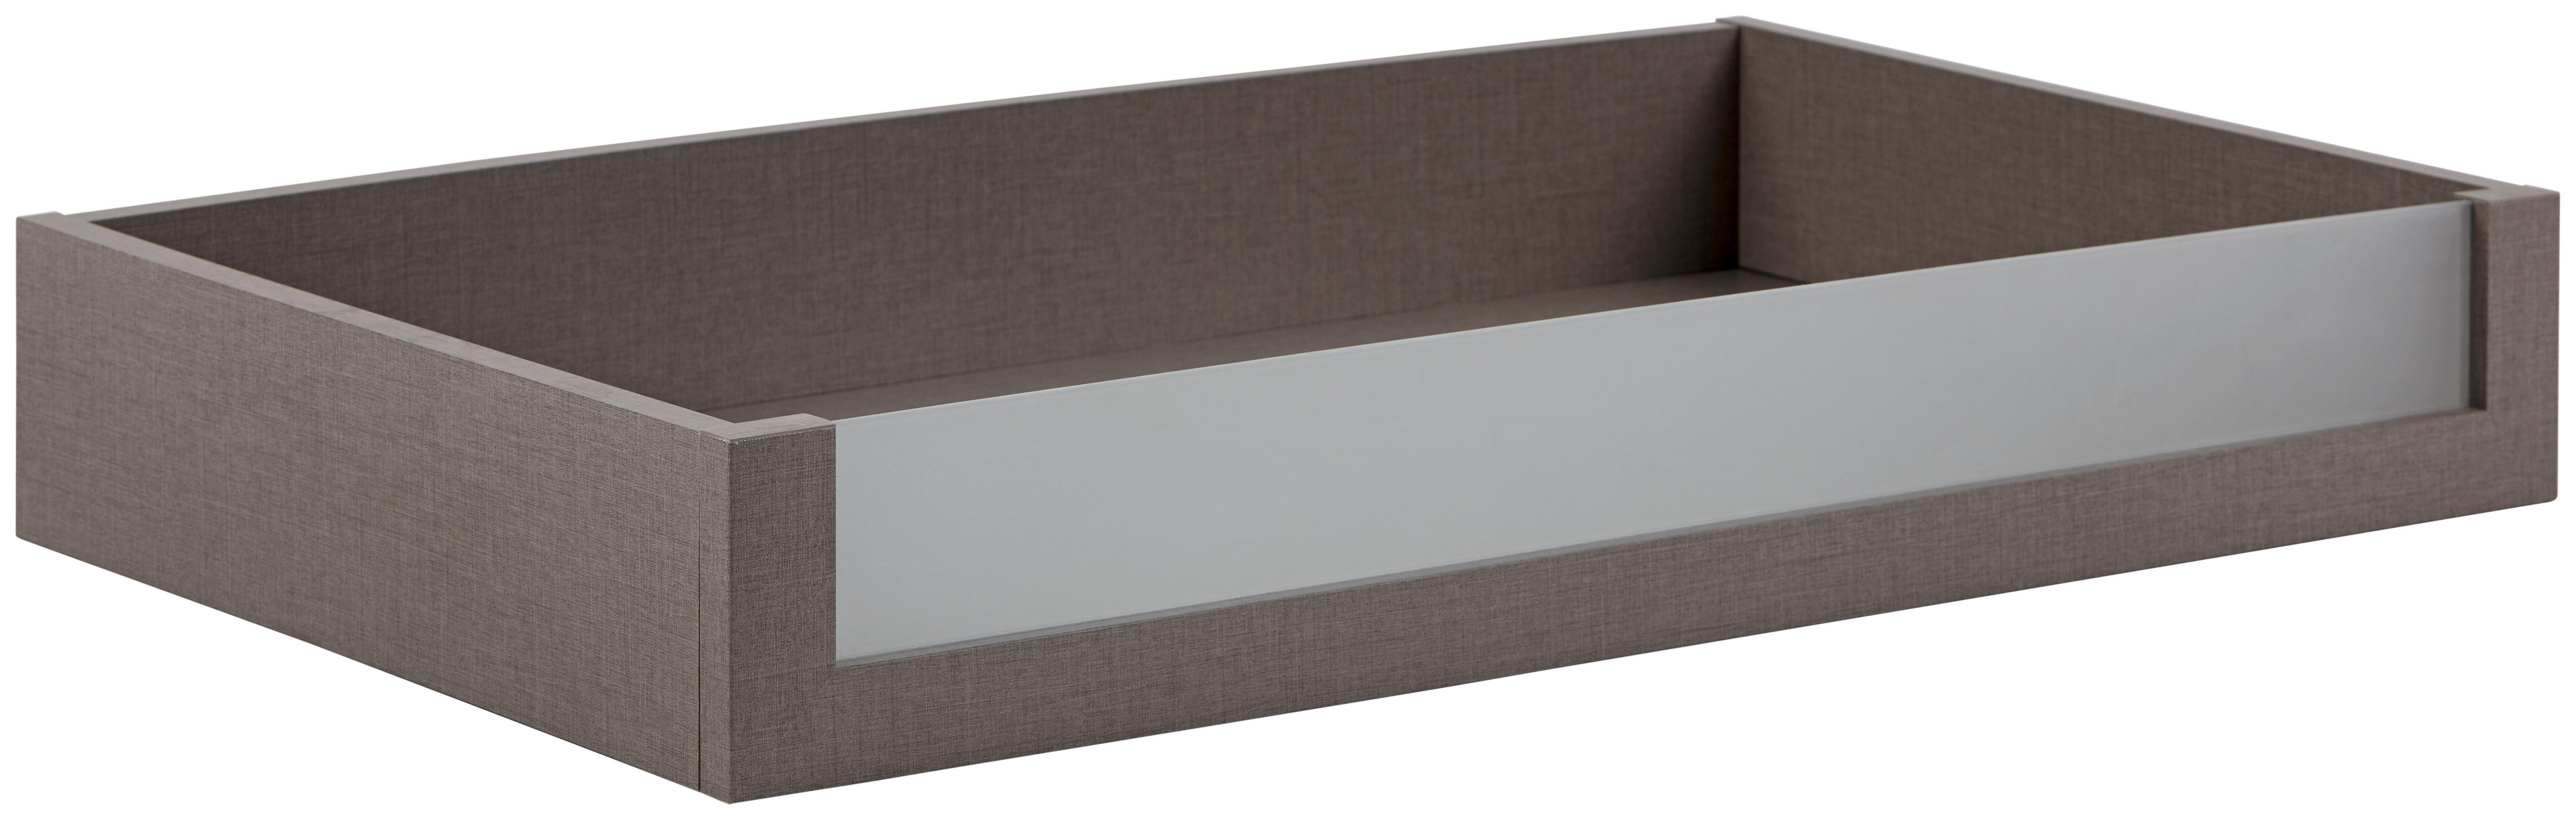 Zásuvka Unit - jílová barva, Moderní, kompozitní dřevo/sklo (87,9cm) - Ondega